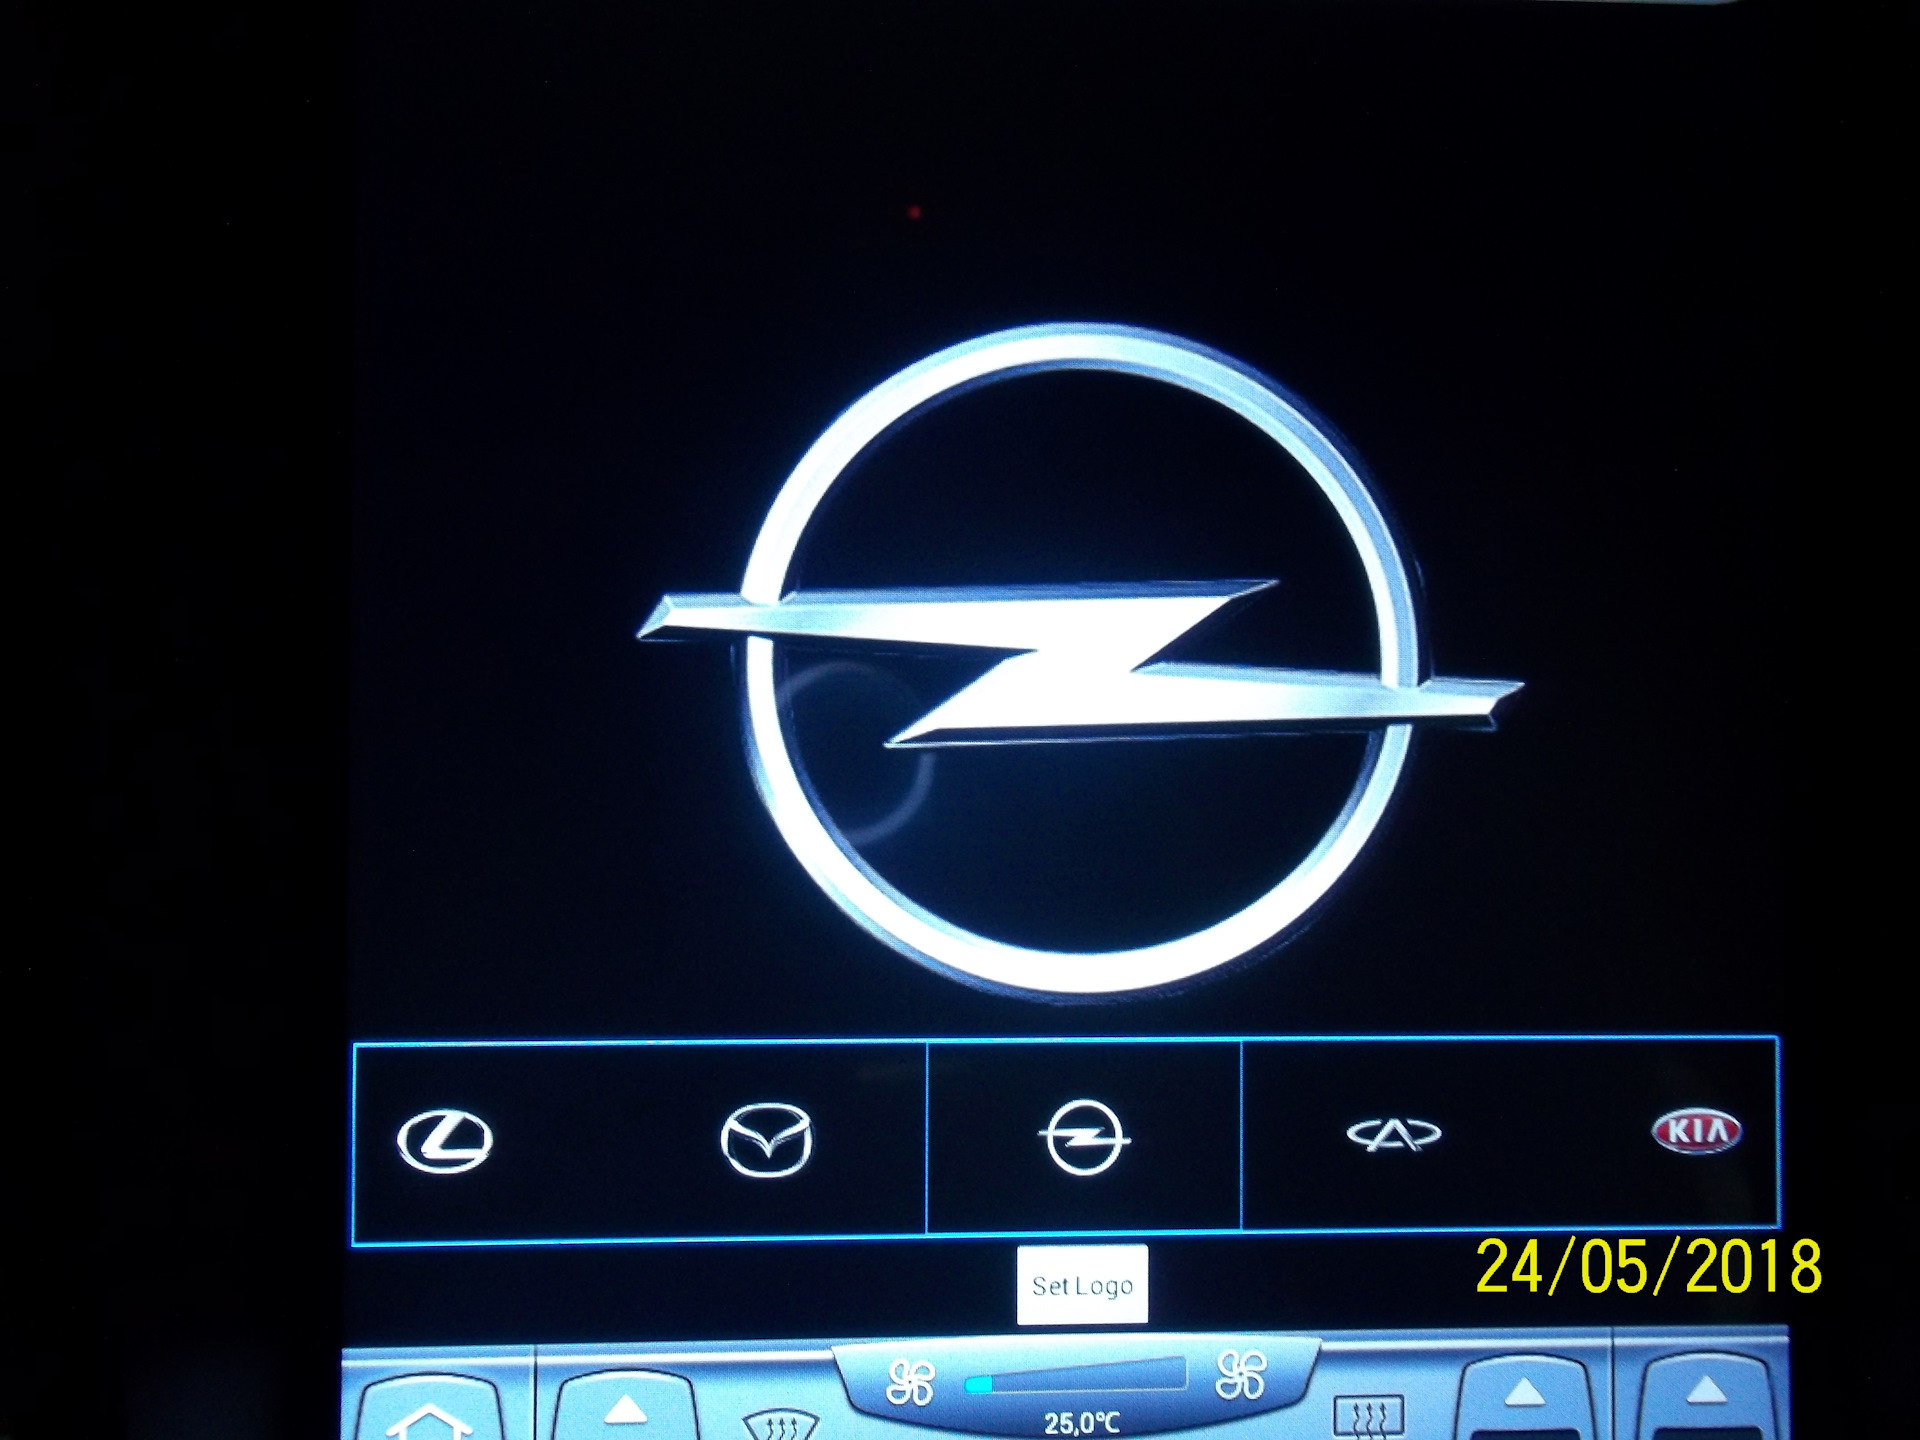 Логотип на заставку магнитолы. Заставка на магнитолу. Заставка Опель на магнитолу. Логотип Opel для магнитолы. Логотип Opel для магнитолы андроид.